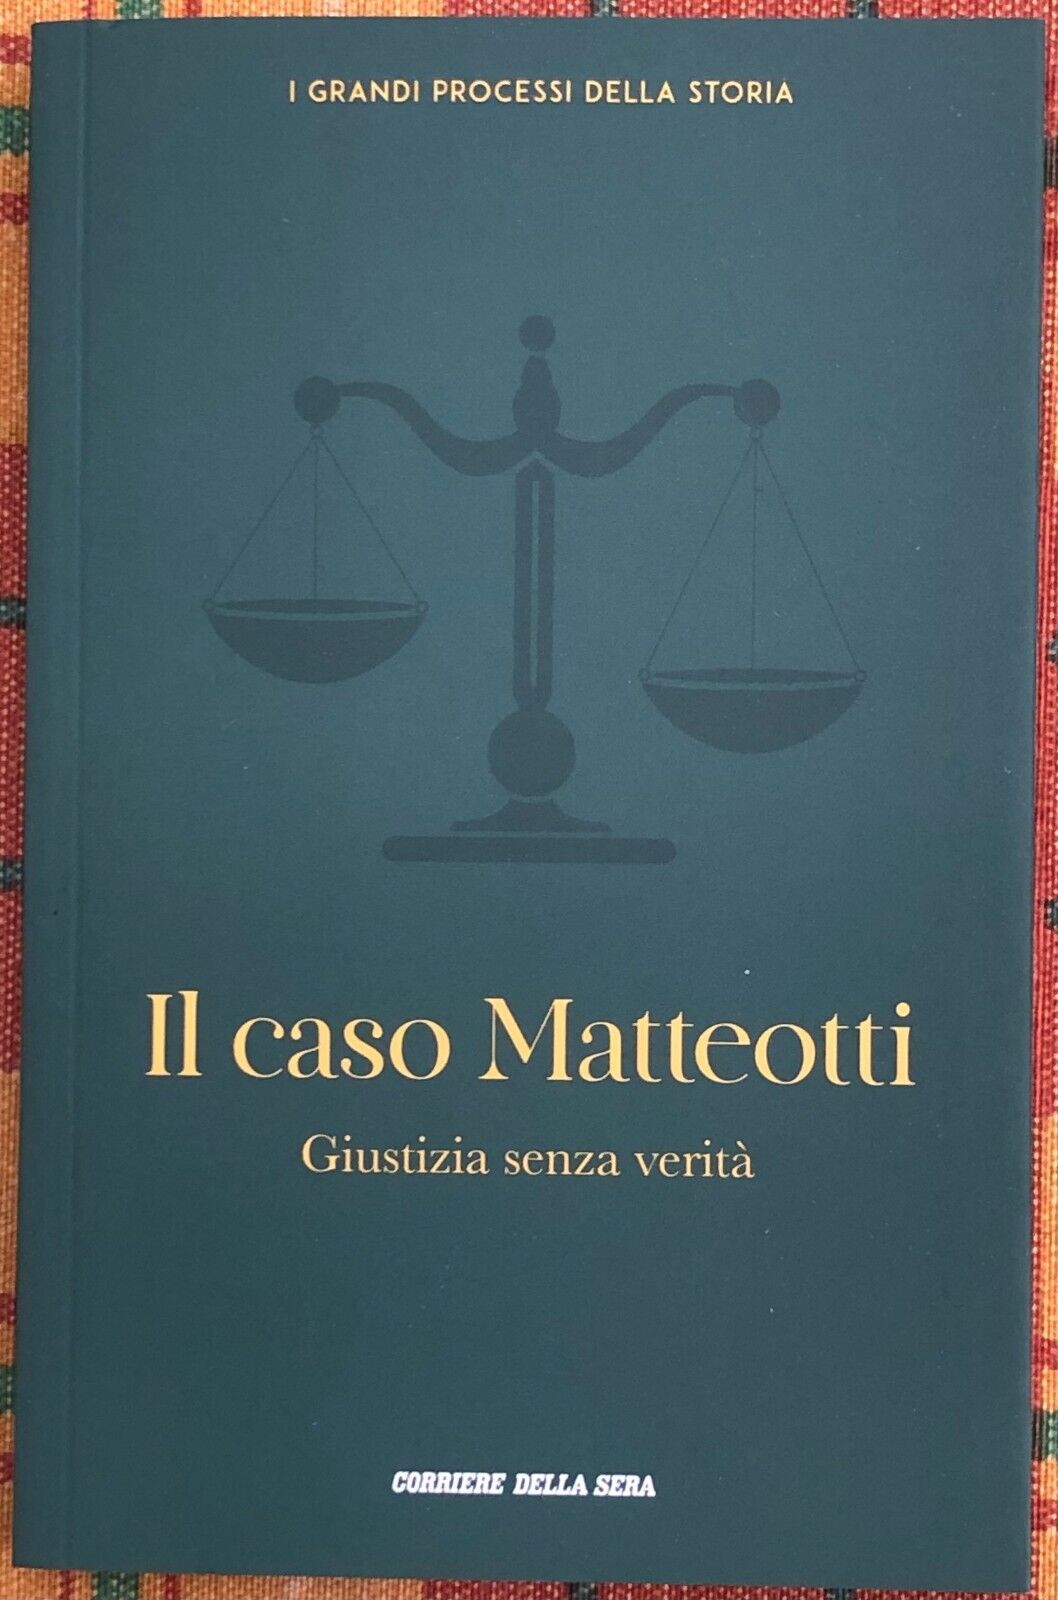 I grandi processi della storia n. 18 - Il caso Matteotti. Giustizia senza verit?